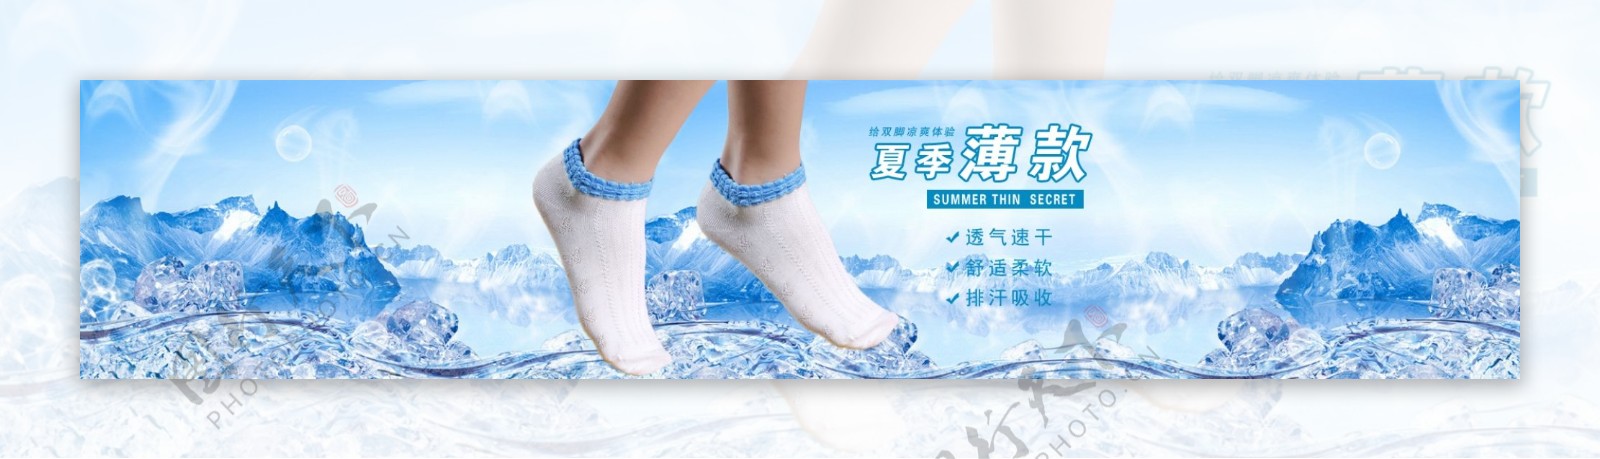 情侣船袜宣传海报棉袜设计素材